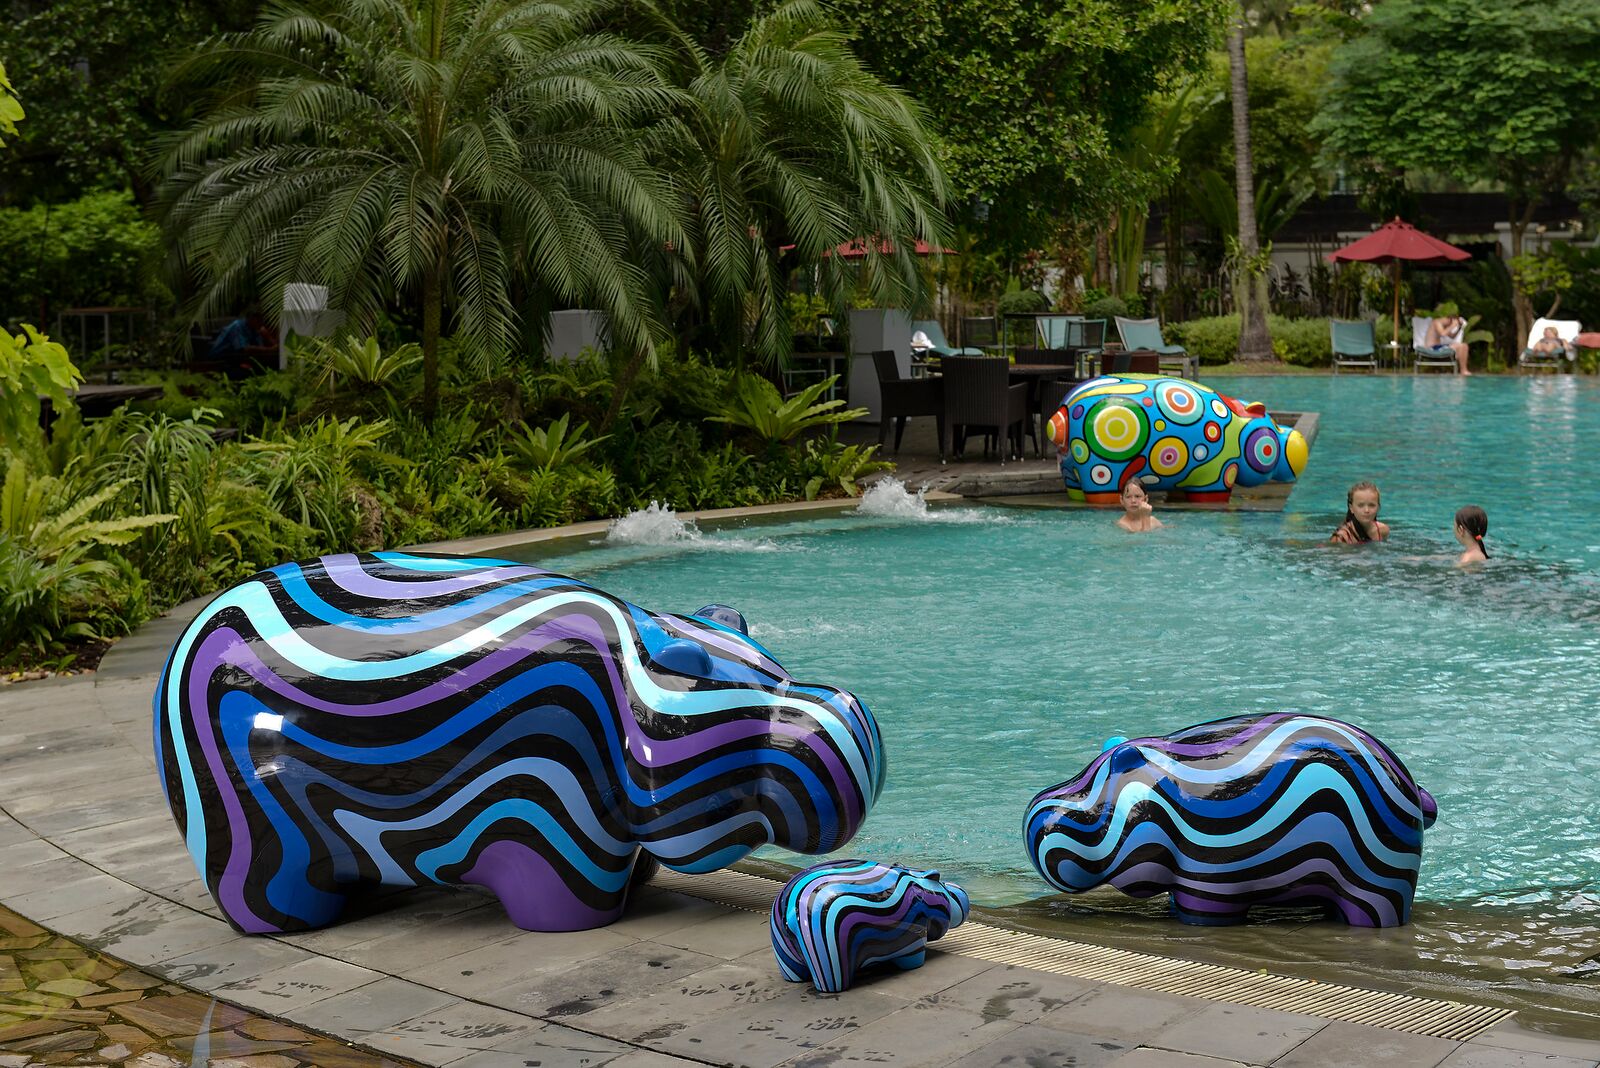 Hippop Art Artheline Pop art hippo sculpture hotel pool